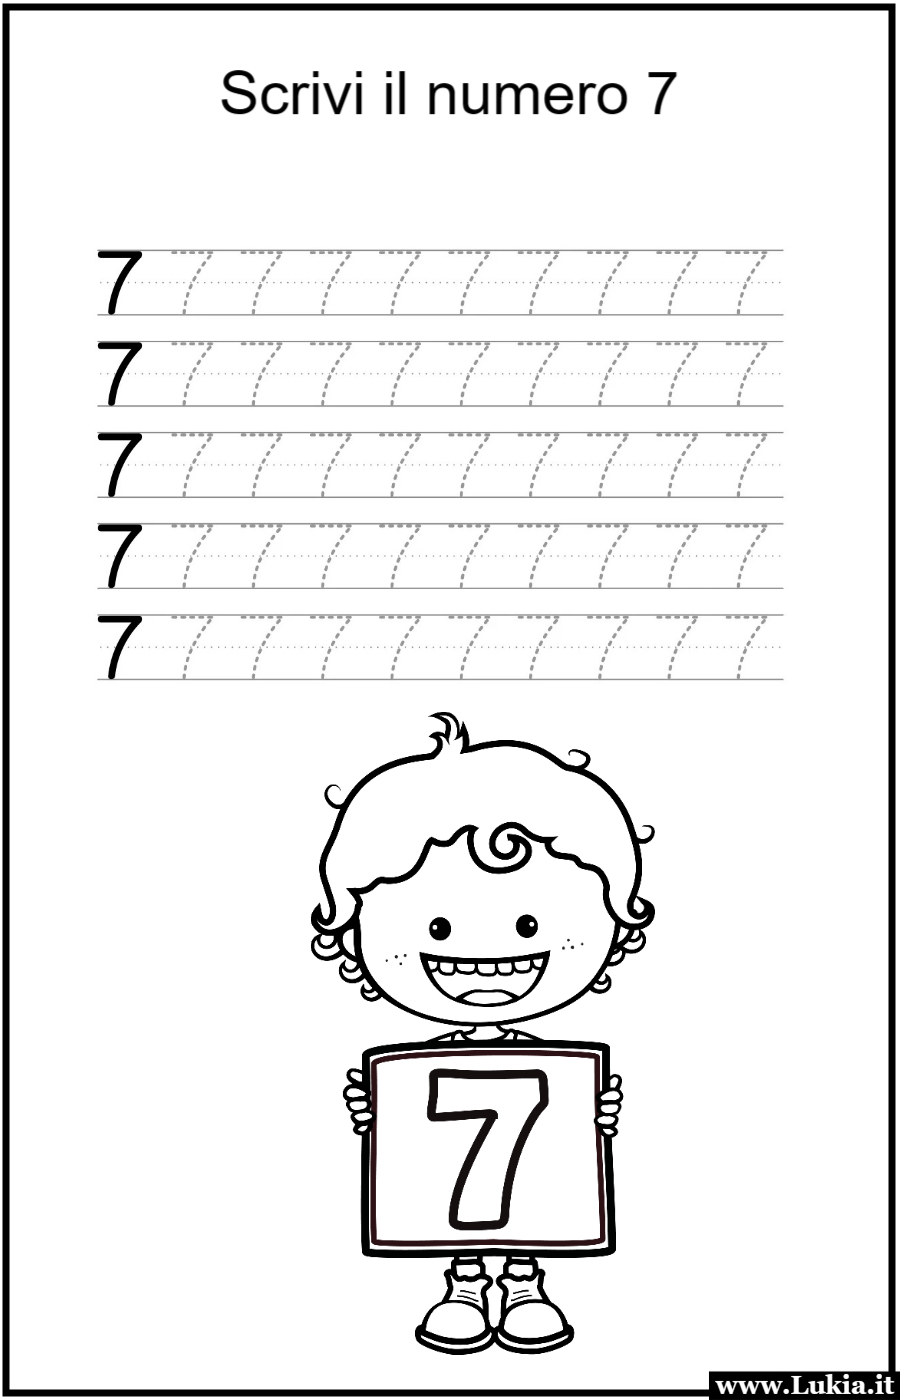 Scheda didattica per la classe prima elementare: scrivere il numero 7! Stampa gratis una scheda didattica per la classe prima elementare: Scrivere il numero 7! Esercizio interattivo per imparare a tracciare il numero 7 correttamente. Scarica e stampa ora per un apprendimento divertente dei numeri! - Immagini gratis